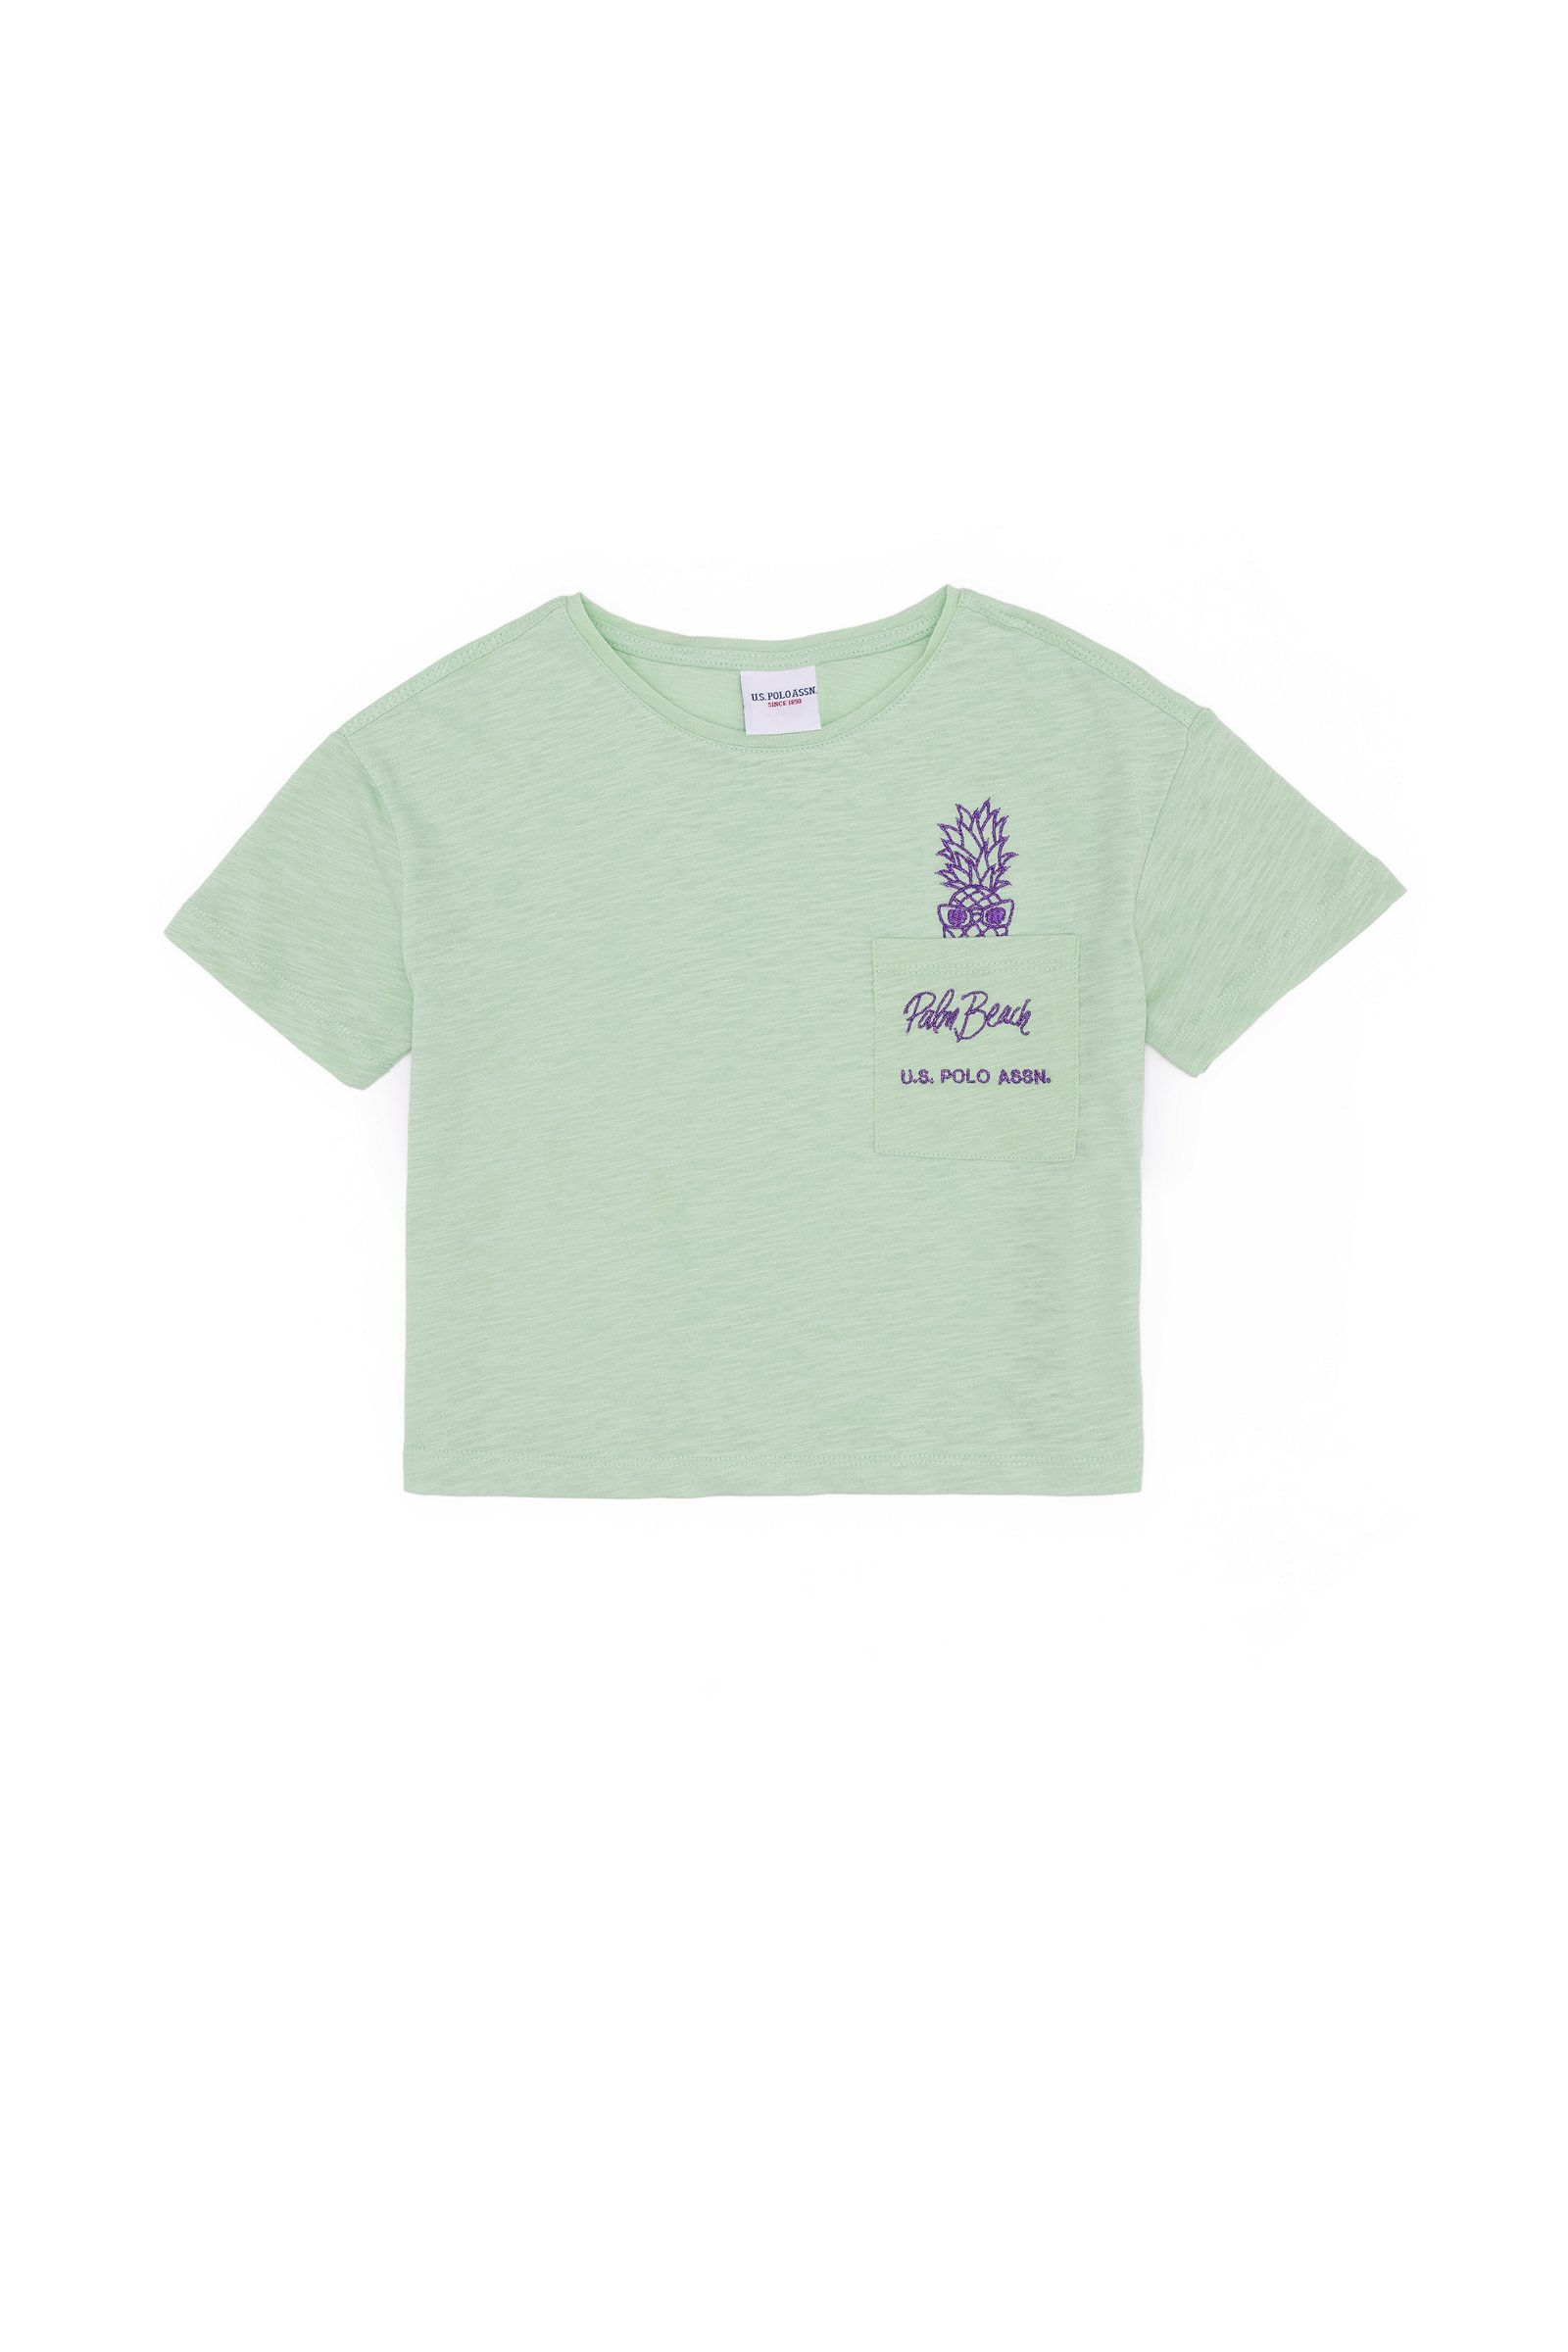 تی شرت  نعناعی  رگولار  دخترانه یو اس پولو | US POLO ASSN